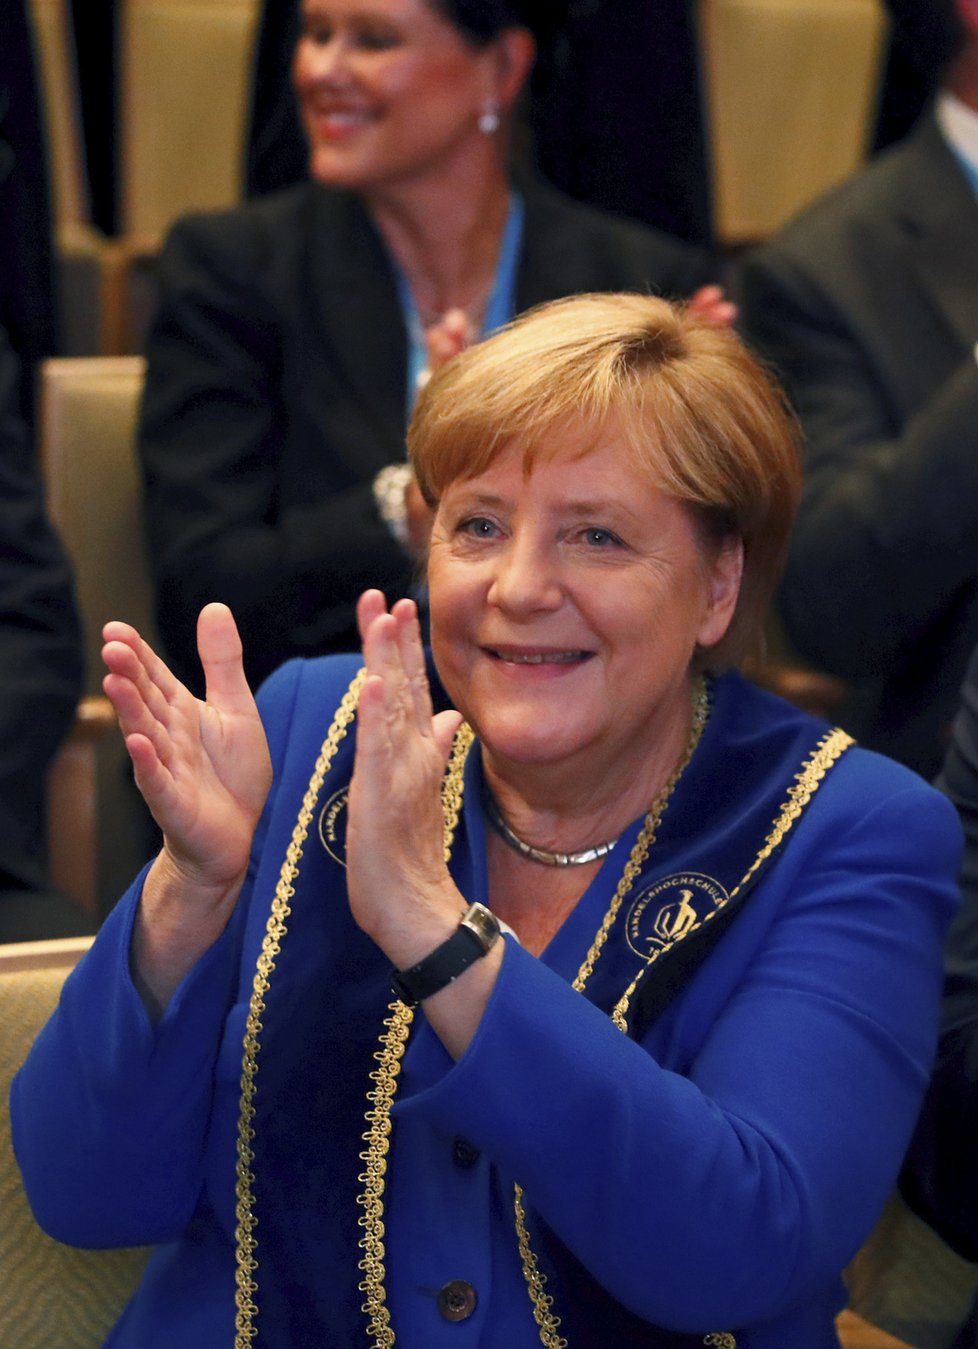 Zemské volby v Sasku vyhrála strana kancléřky Merkelové CDU, největší radost měla protiimigrační AfD, která byla těsně druhá.